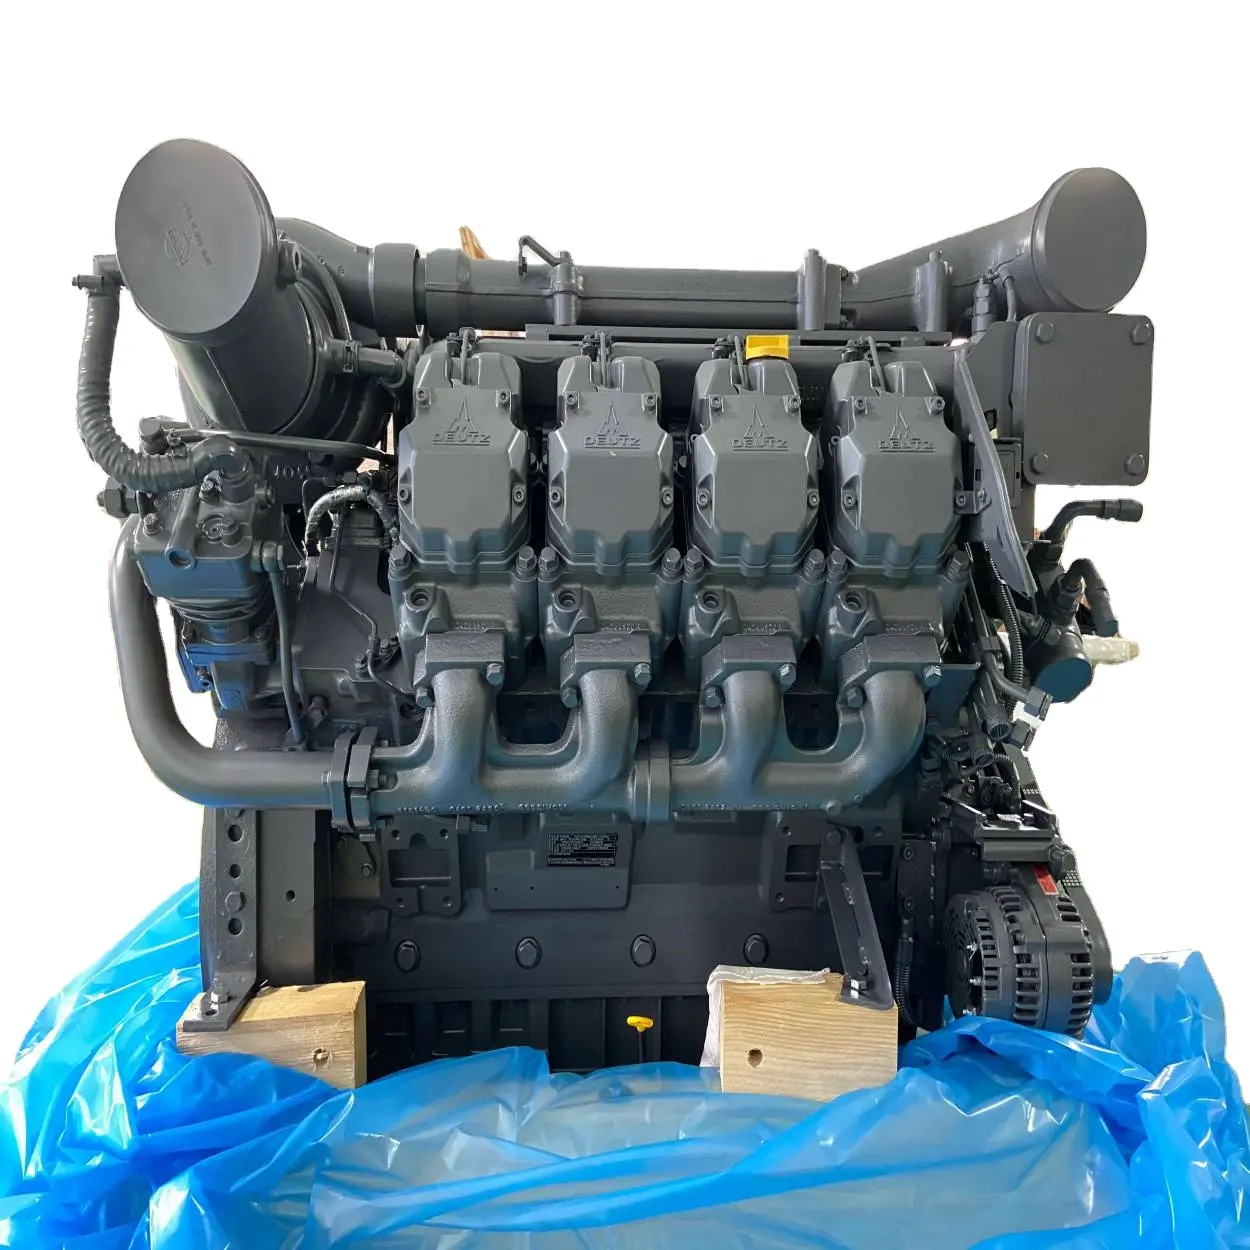 Brandneuer Tcd 2015 V8 600HP Dieselmotor